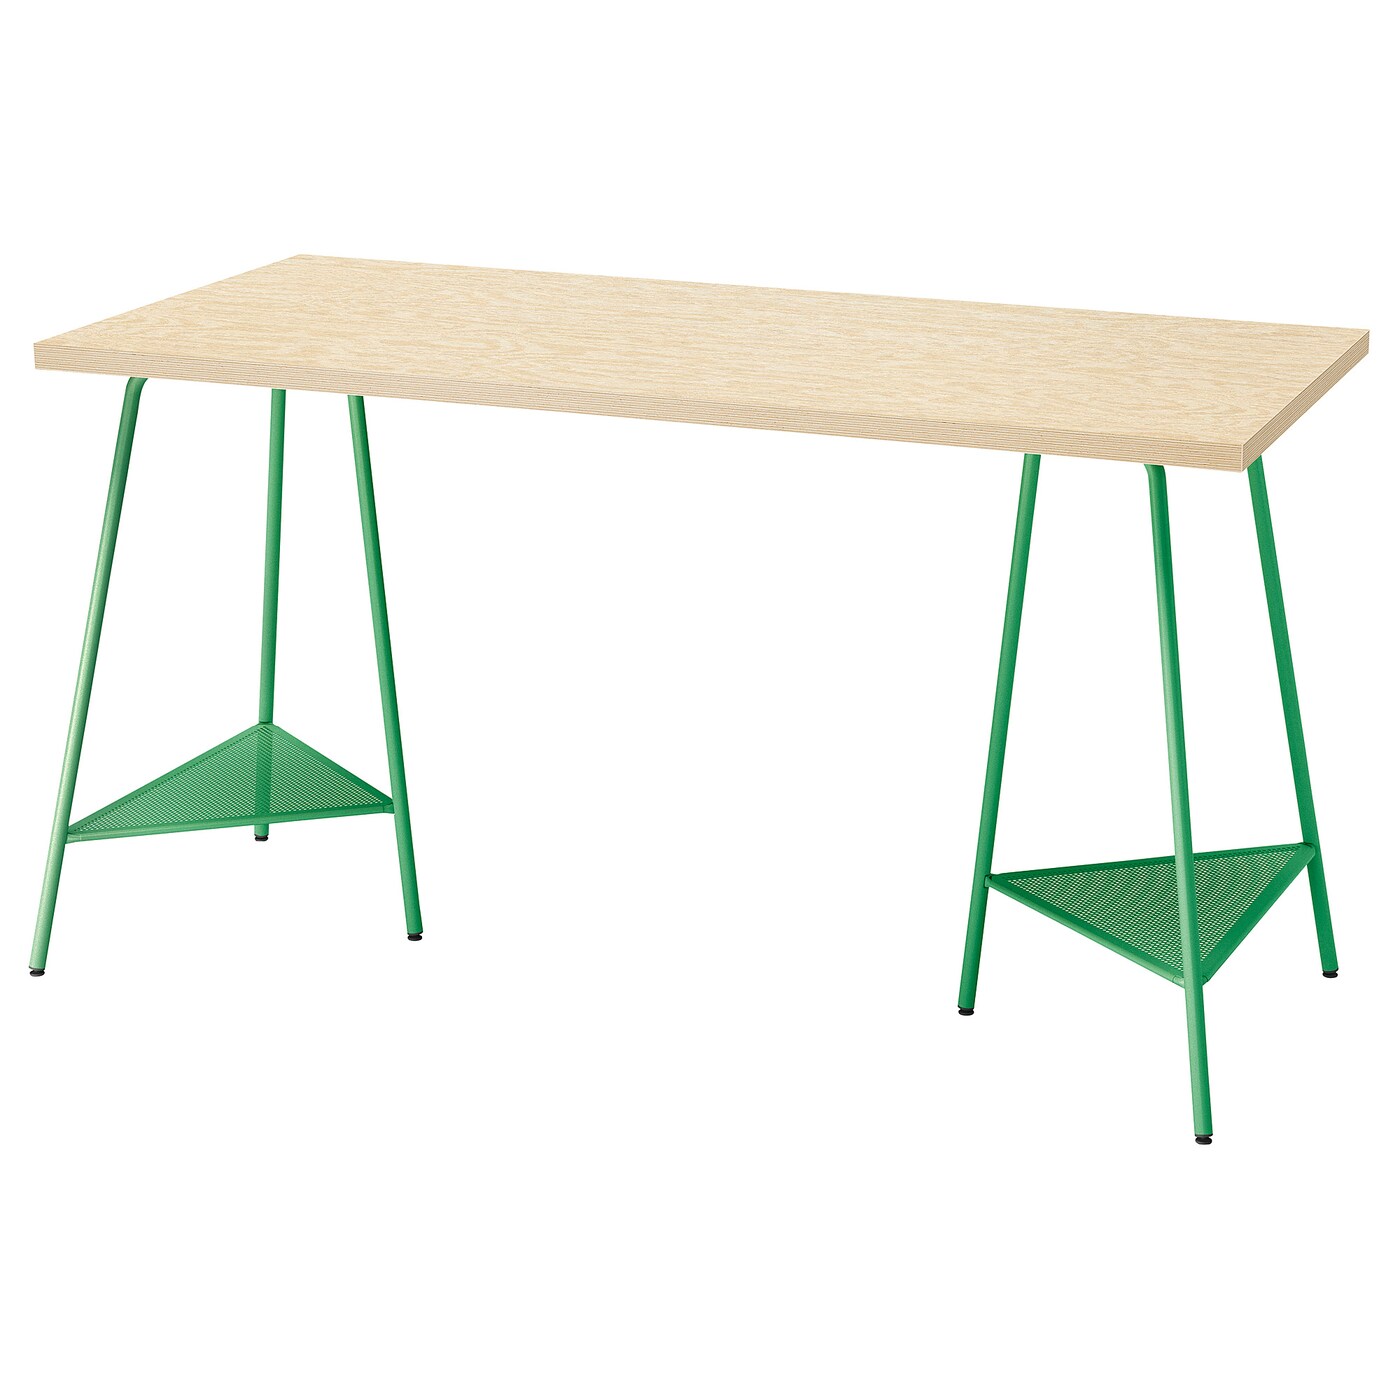 Письменный стол - IKEA MITTCIRKEL/TILLSLAG, 140х60 см, сосна/зеленый, МИТЦИРКЕЛЬ/ТИЛЛЬСЛАГ ИКЕА